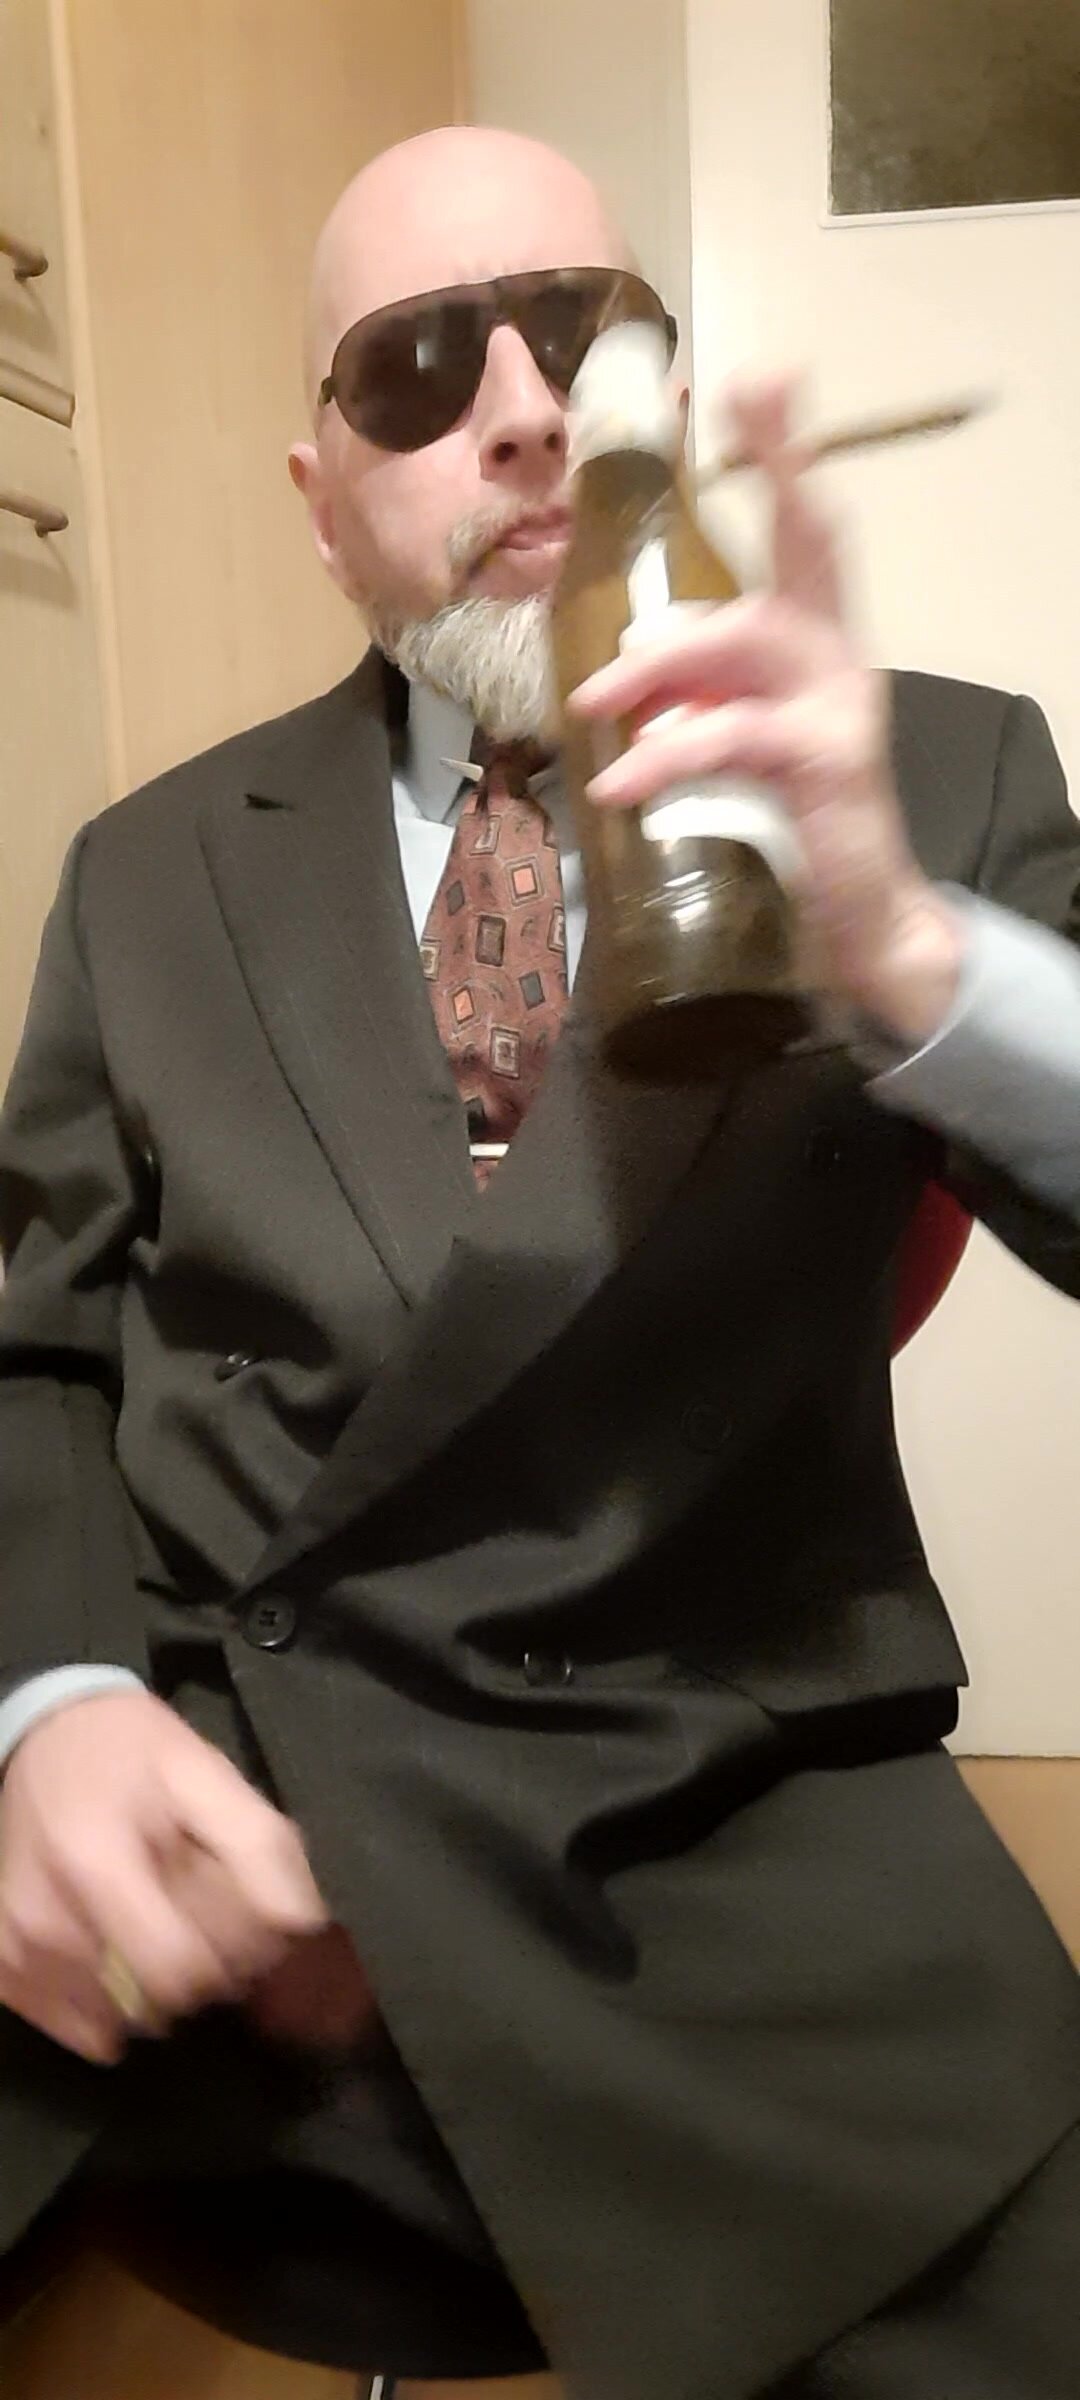 Wank drunken in suit and tie